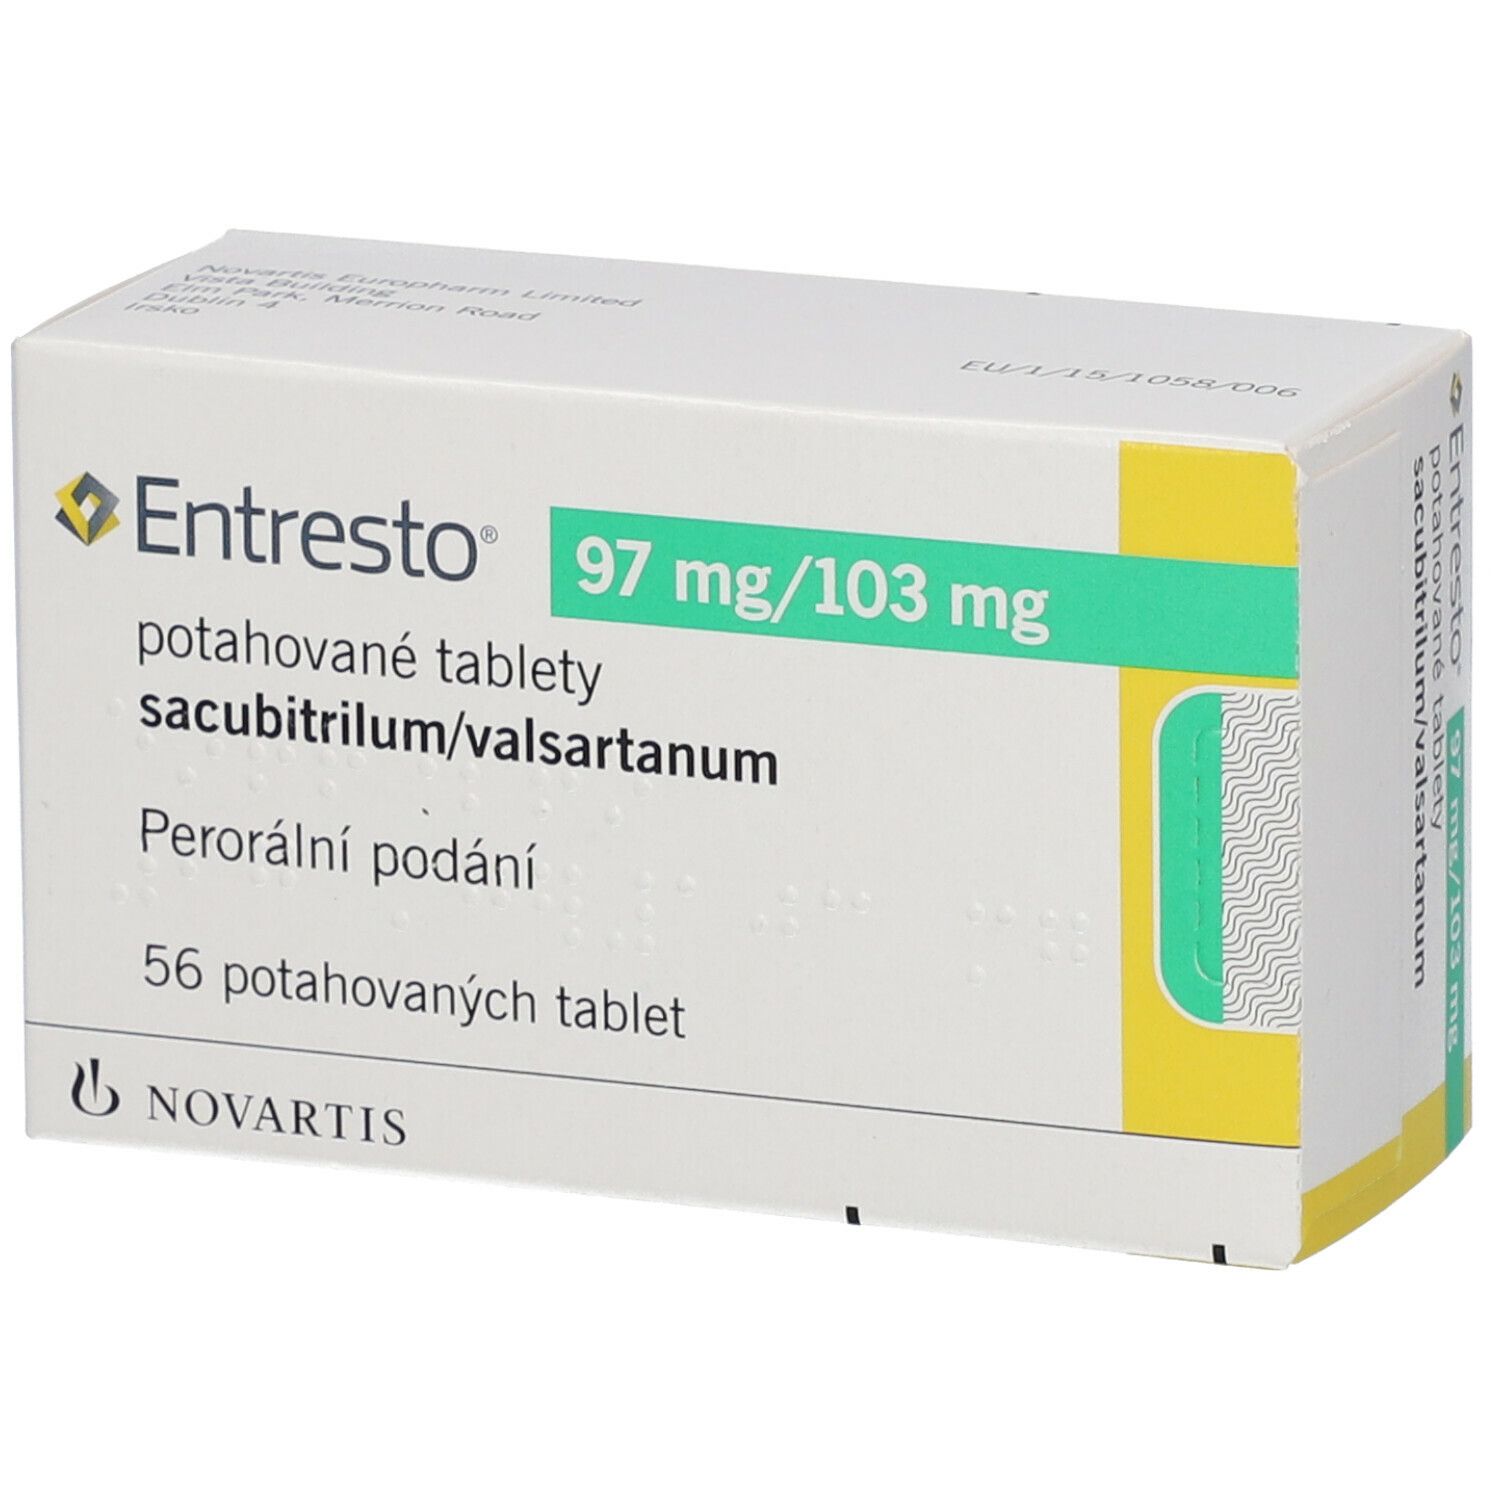 Entresto 97 mg/103 mg